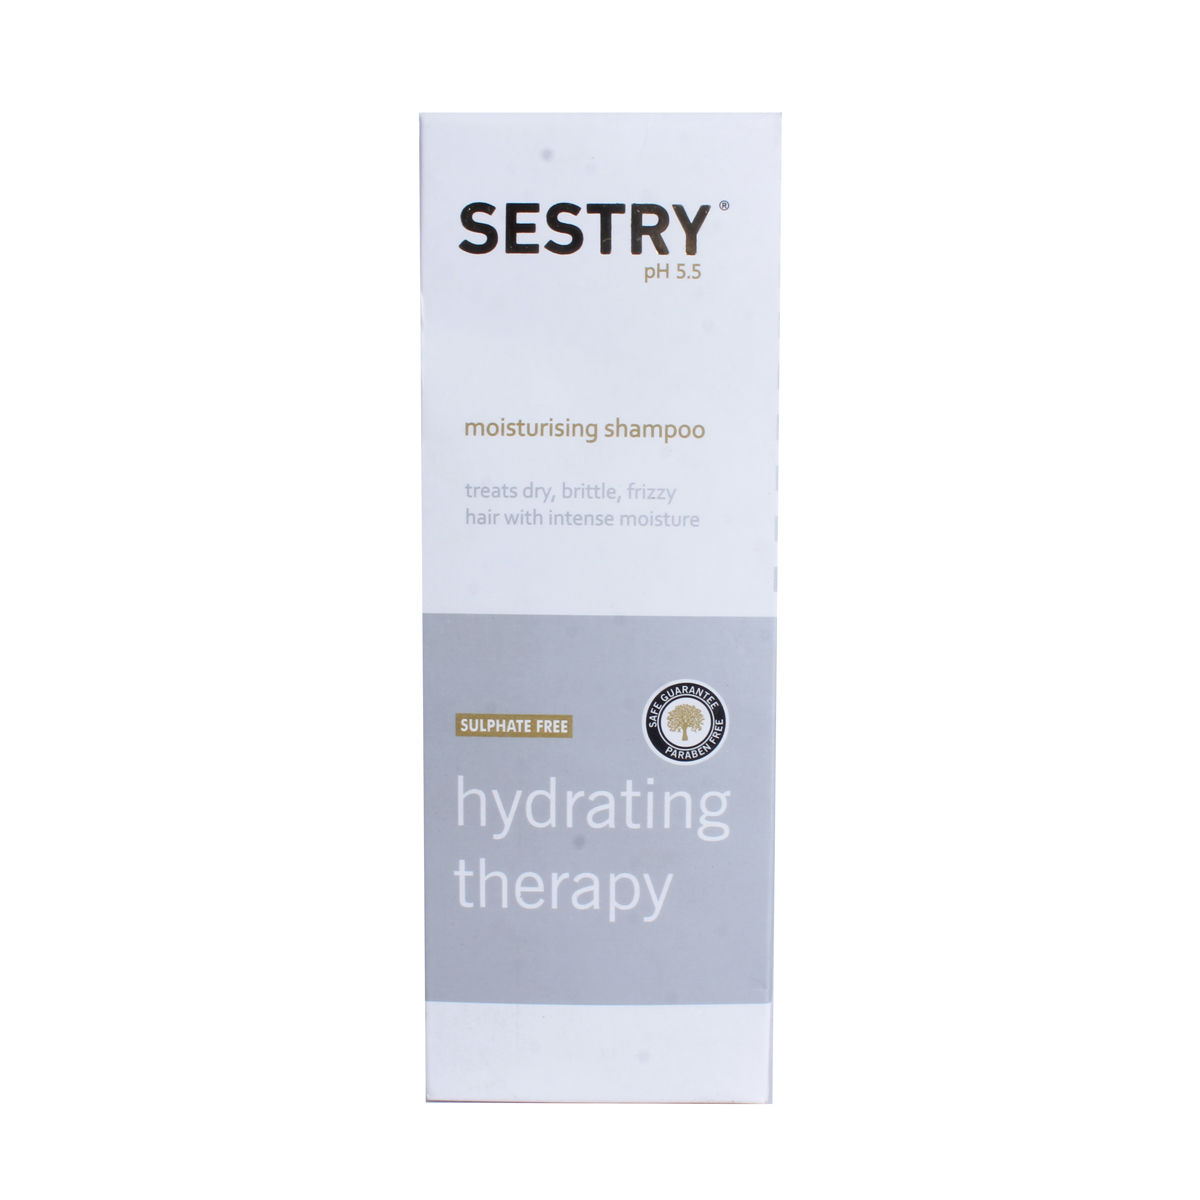 Buy Sestry Moisturising Shampoo 250 ml Online